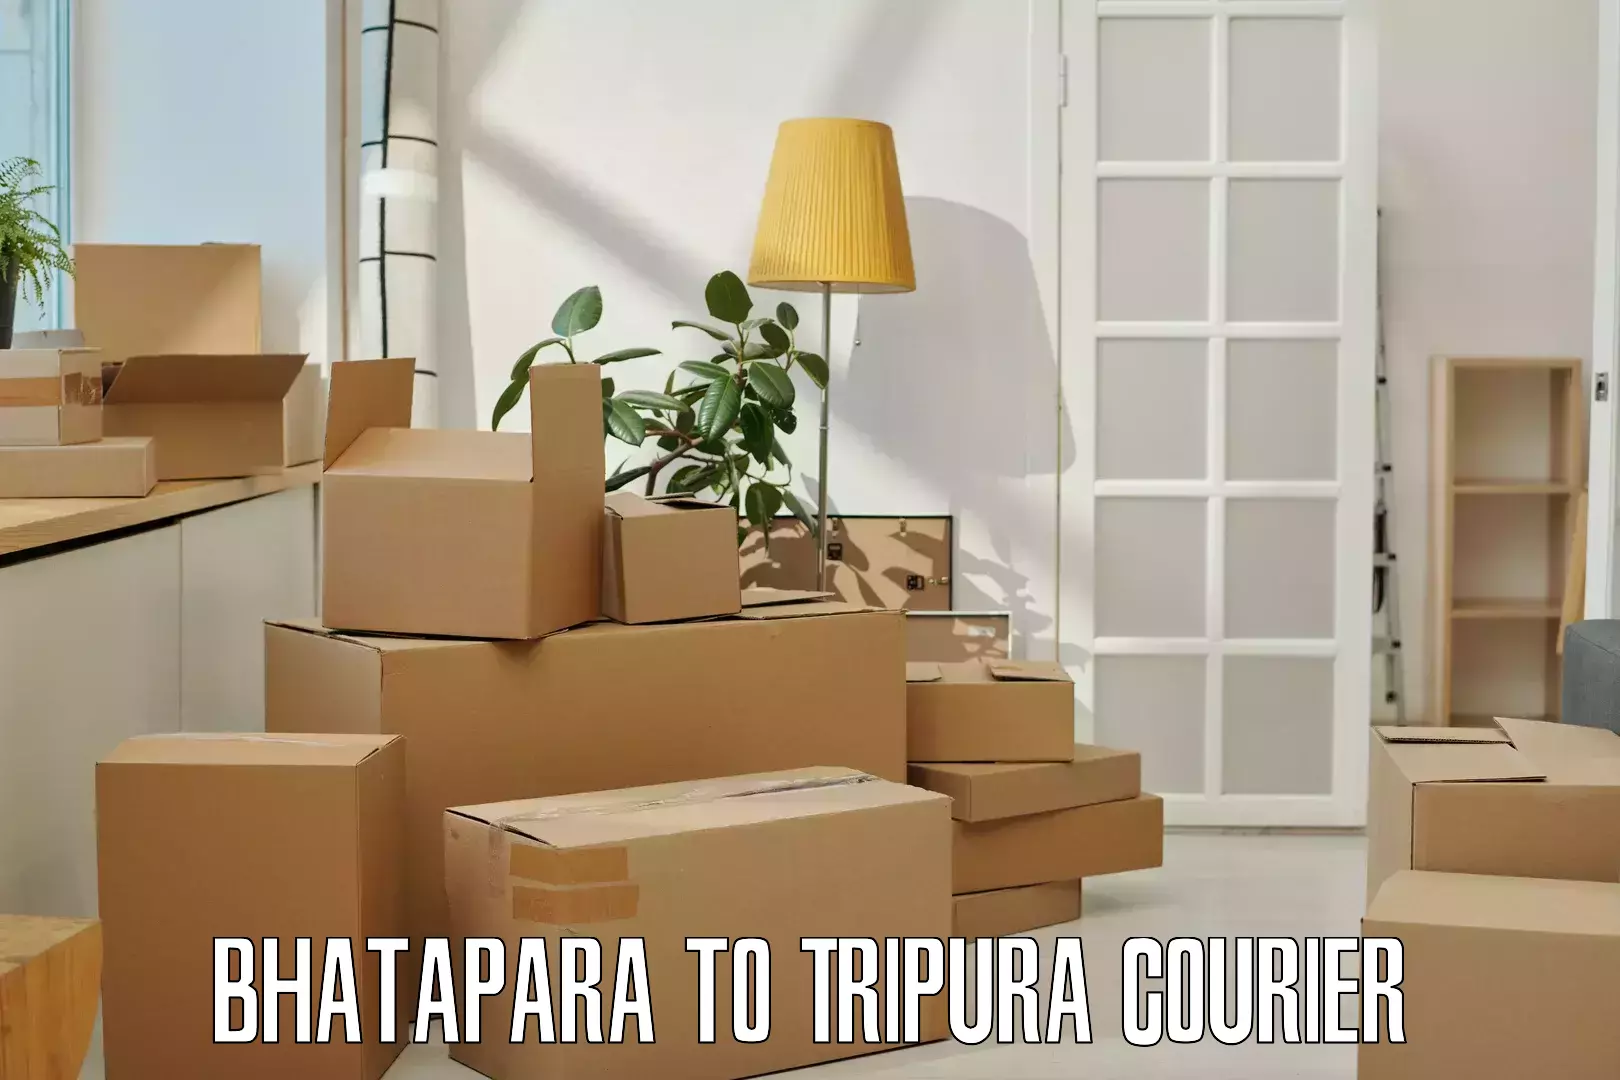 Global freight services Bhatapara to Tripura